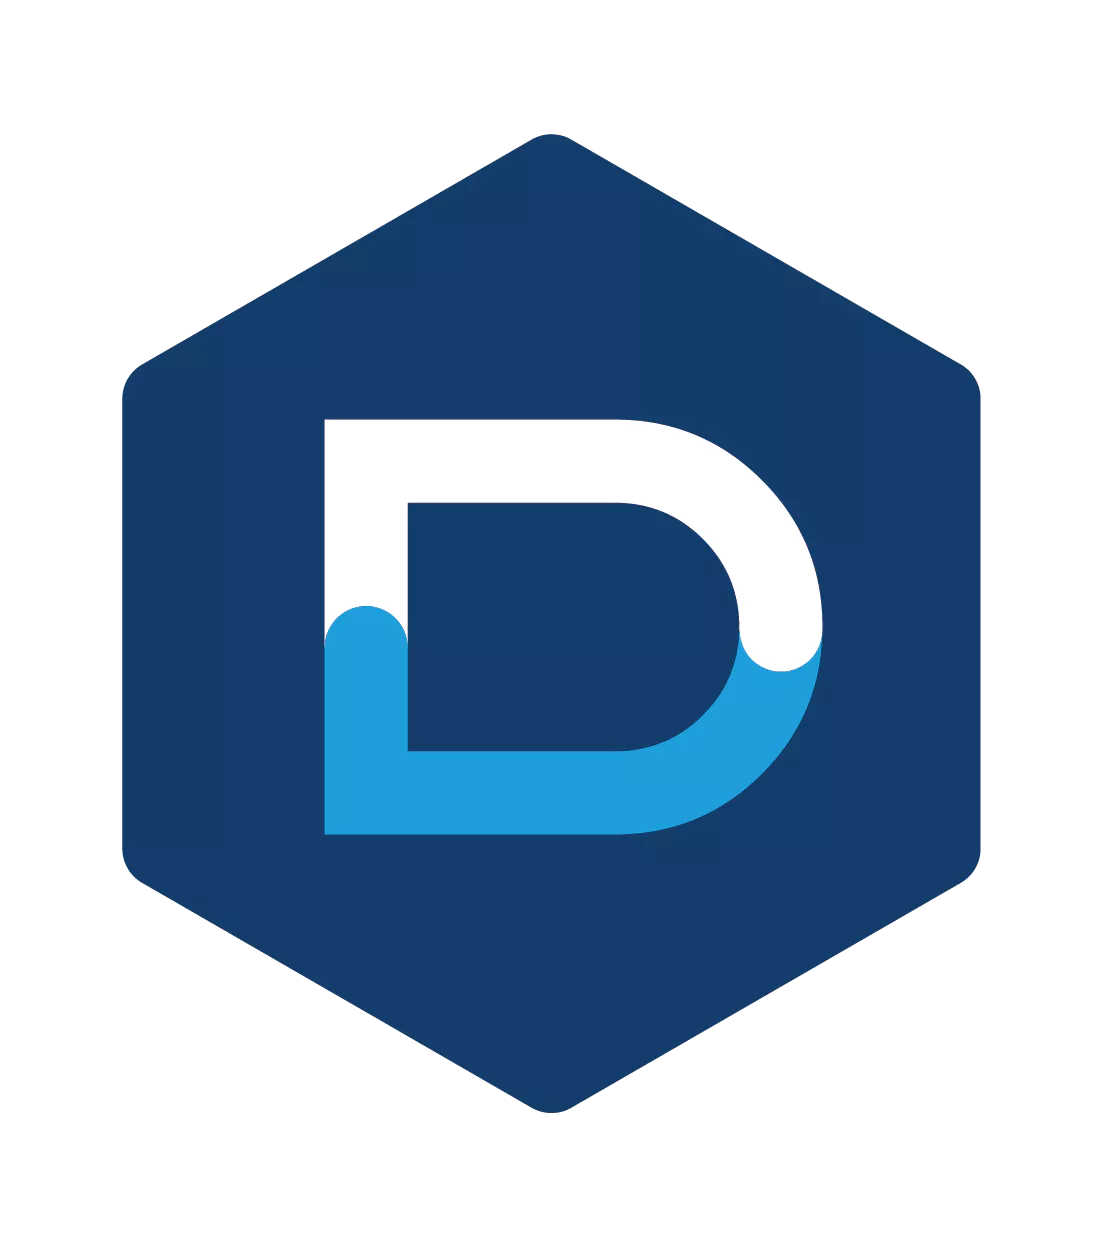 Denv-R's logo